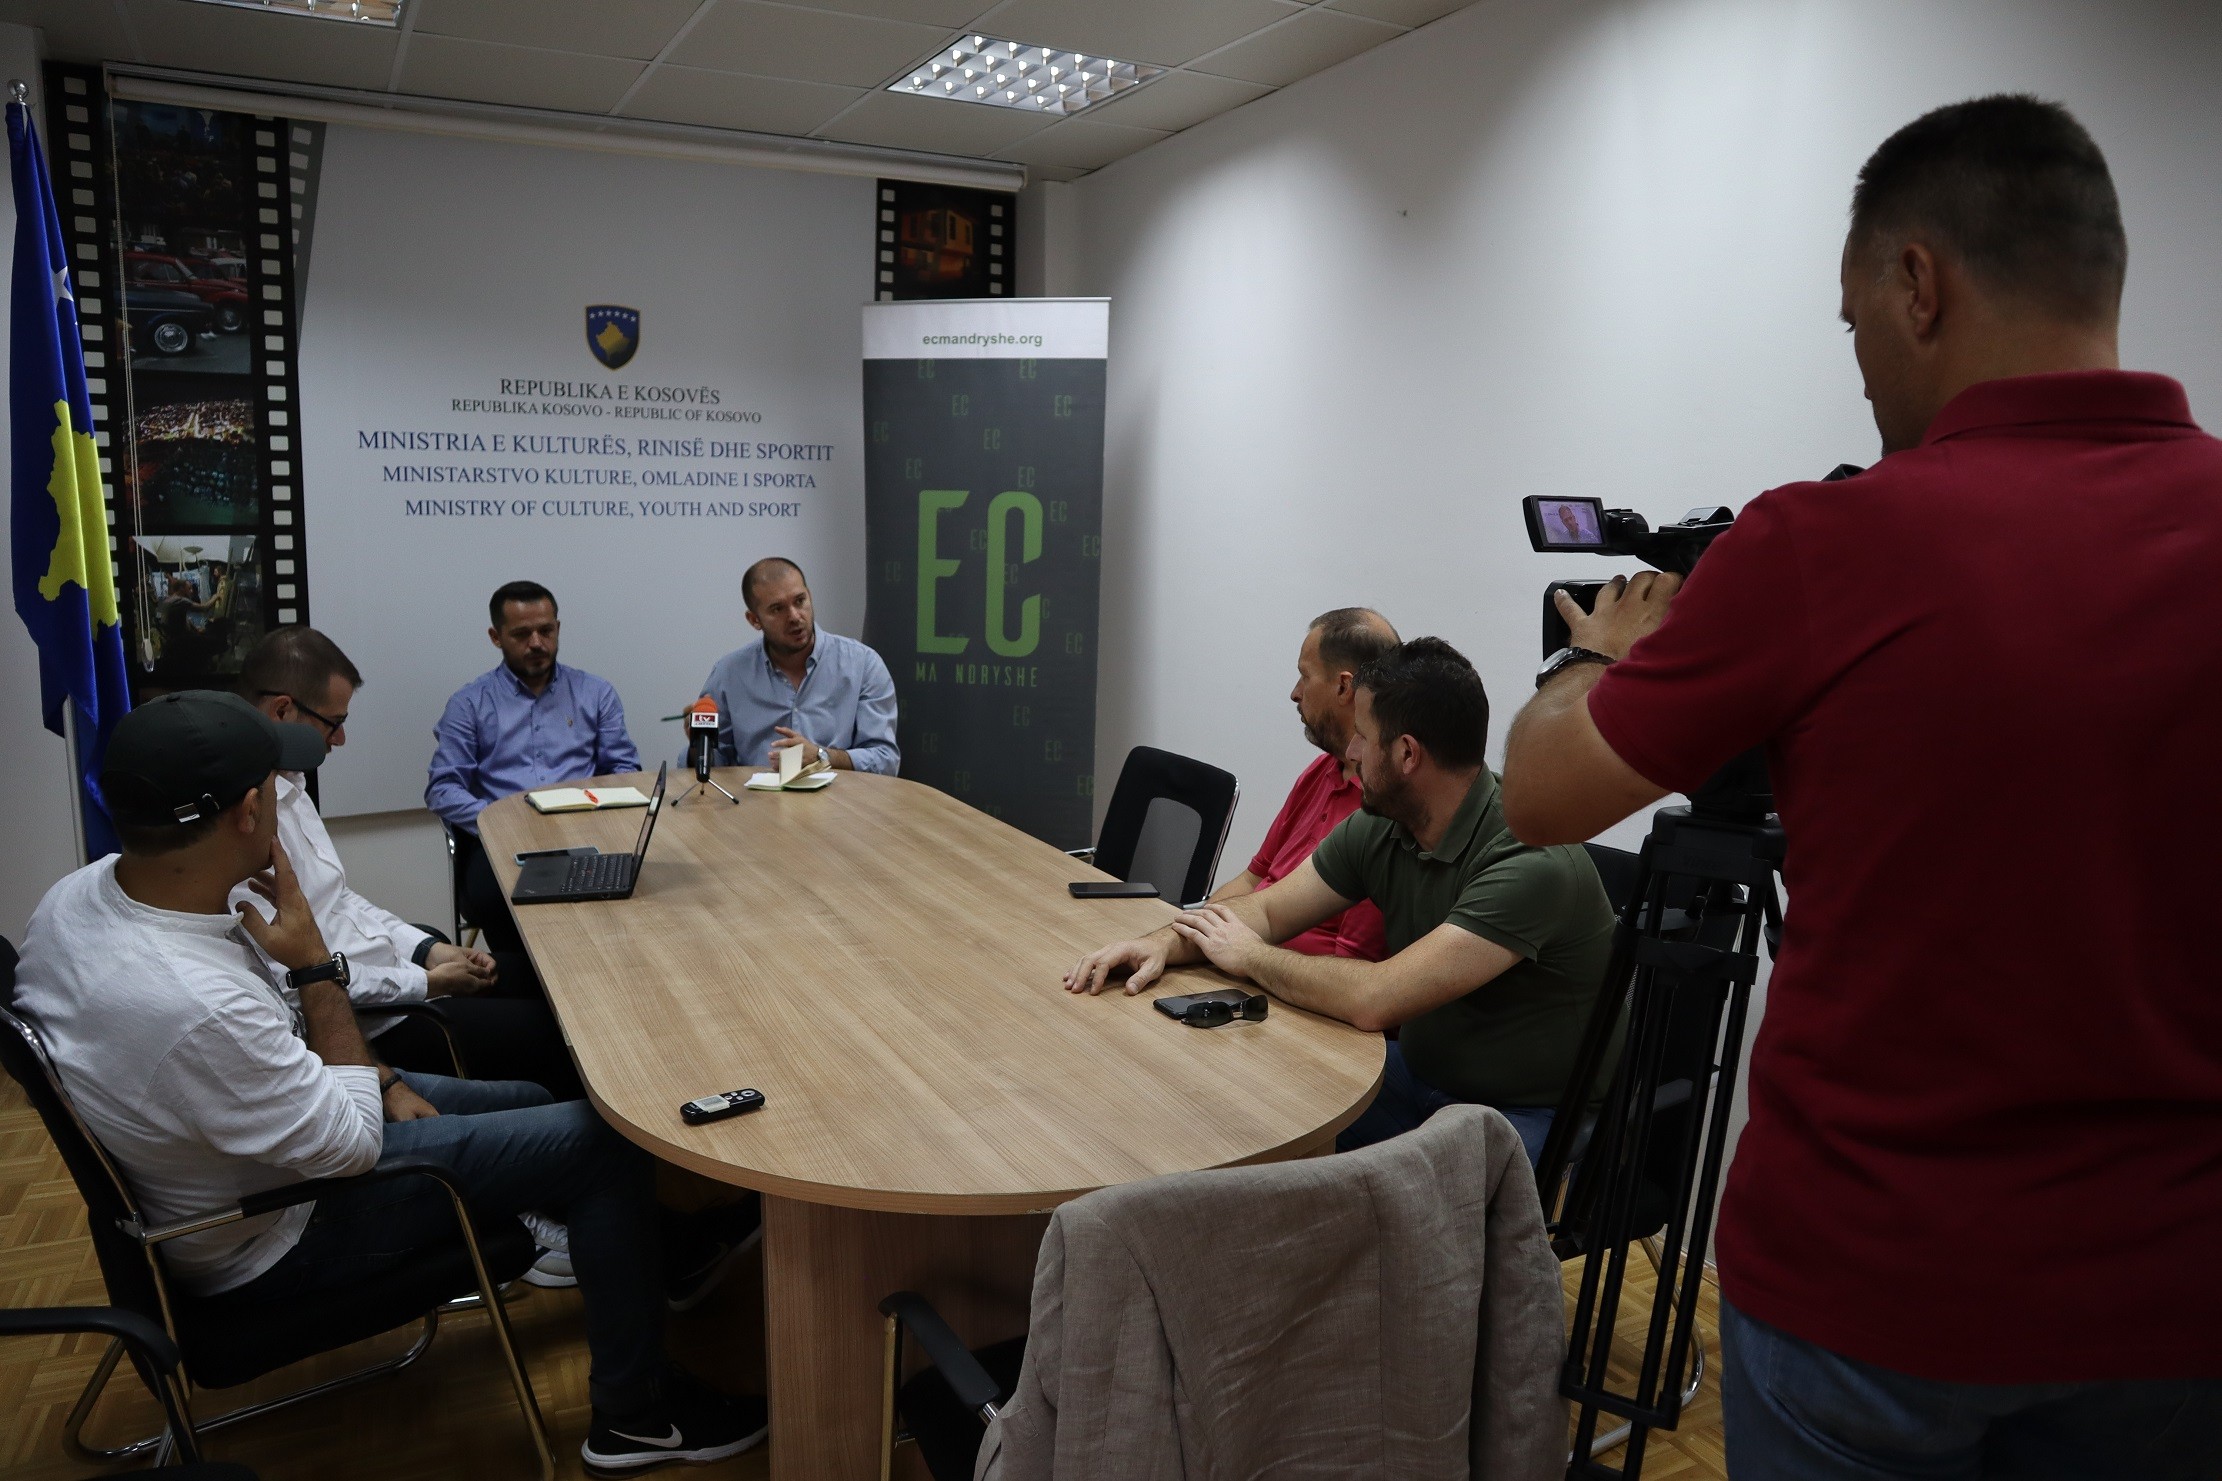 Lansohet Platforma Digjitale e Qendrës Historike të Prizrenit